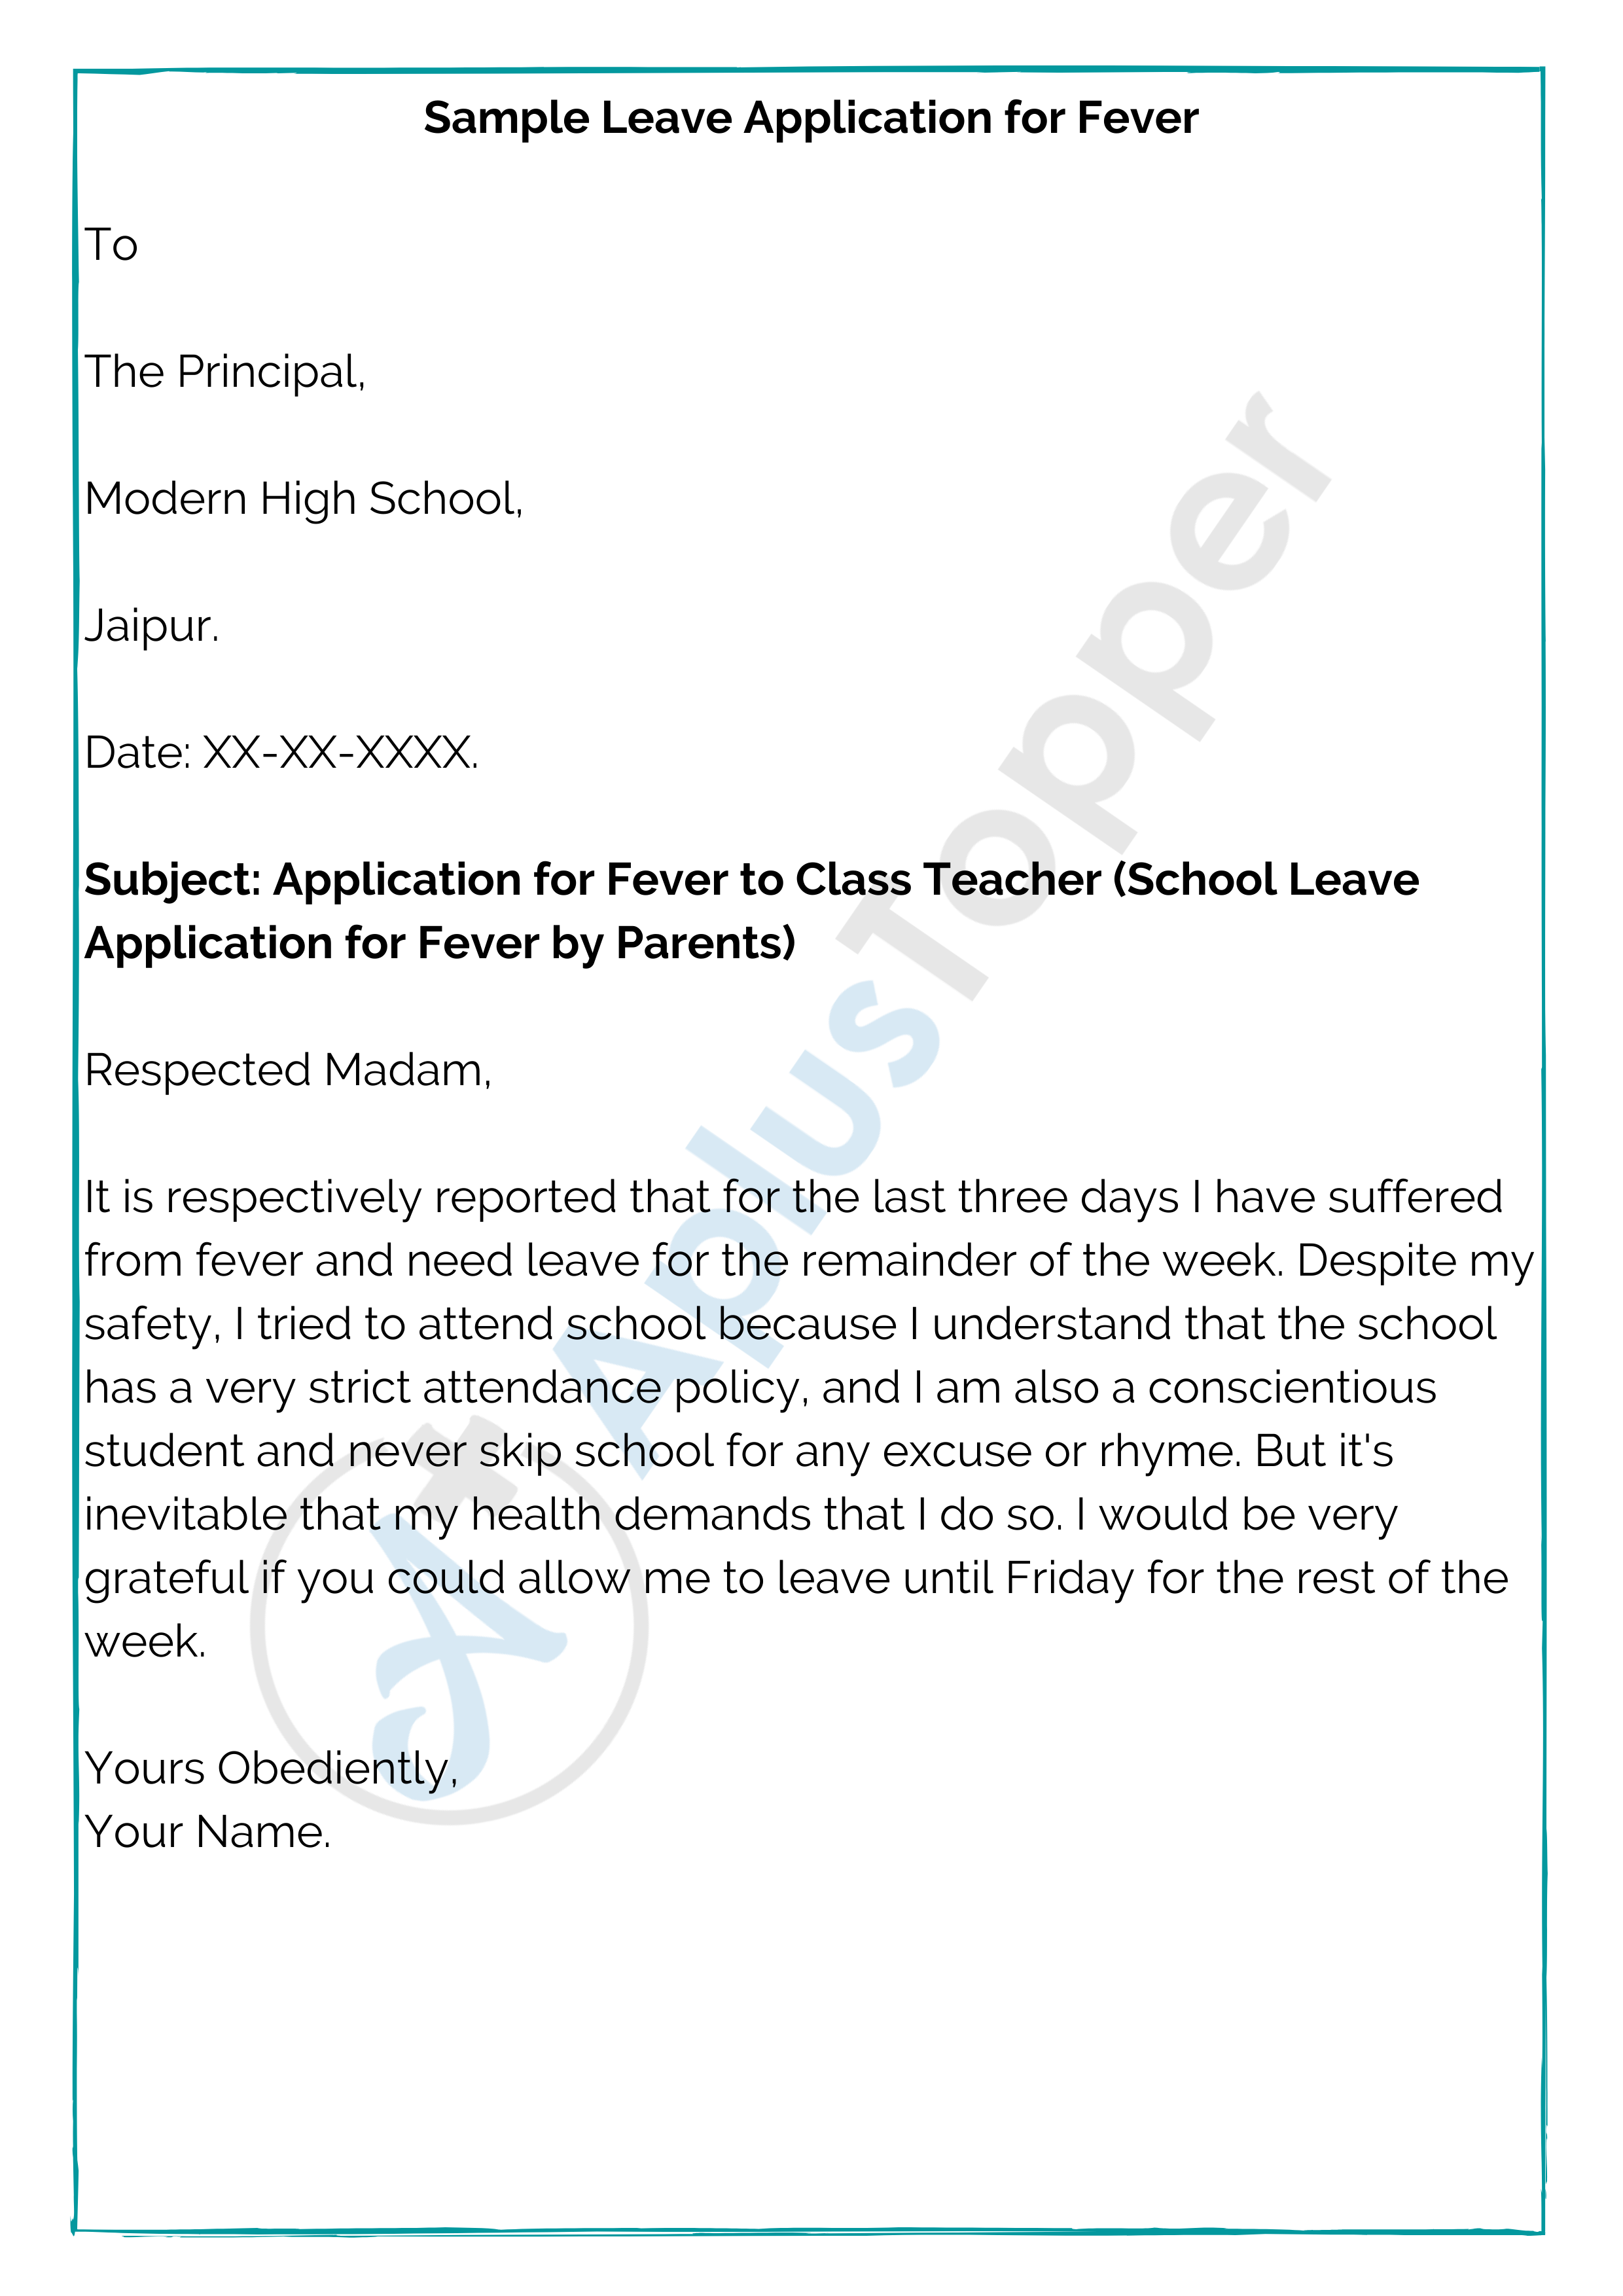 application letter for school fever